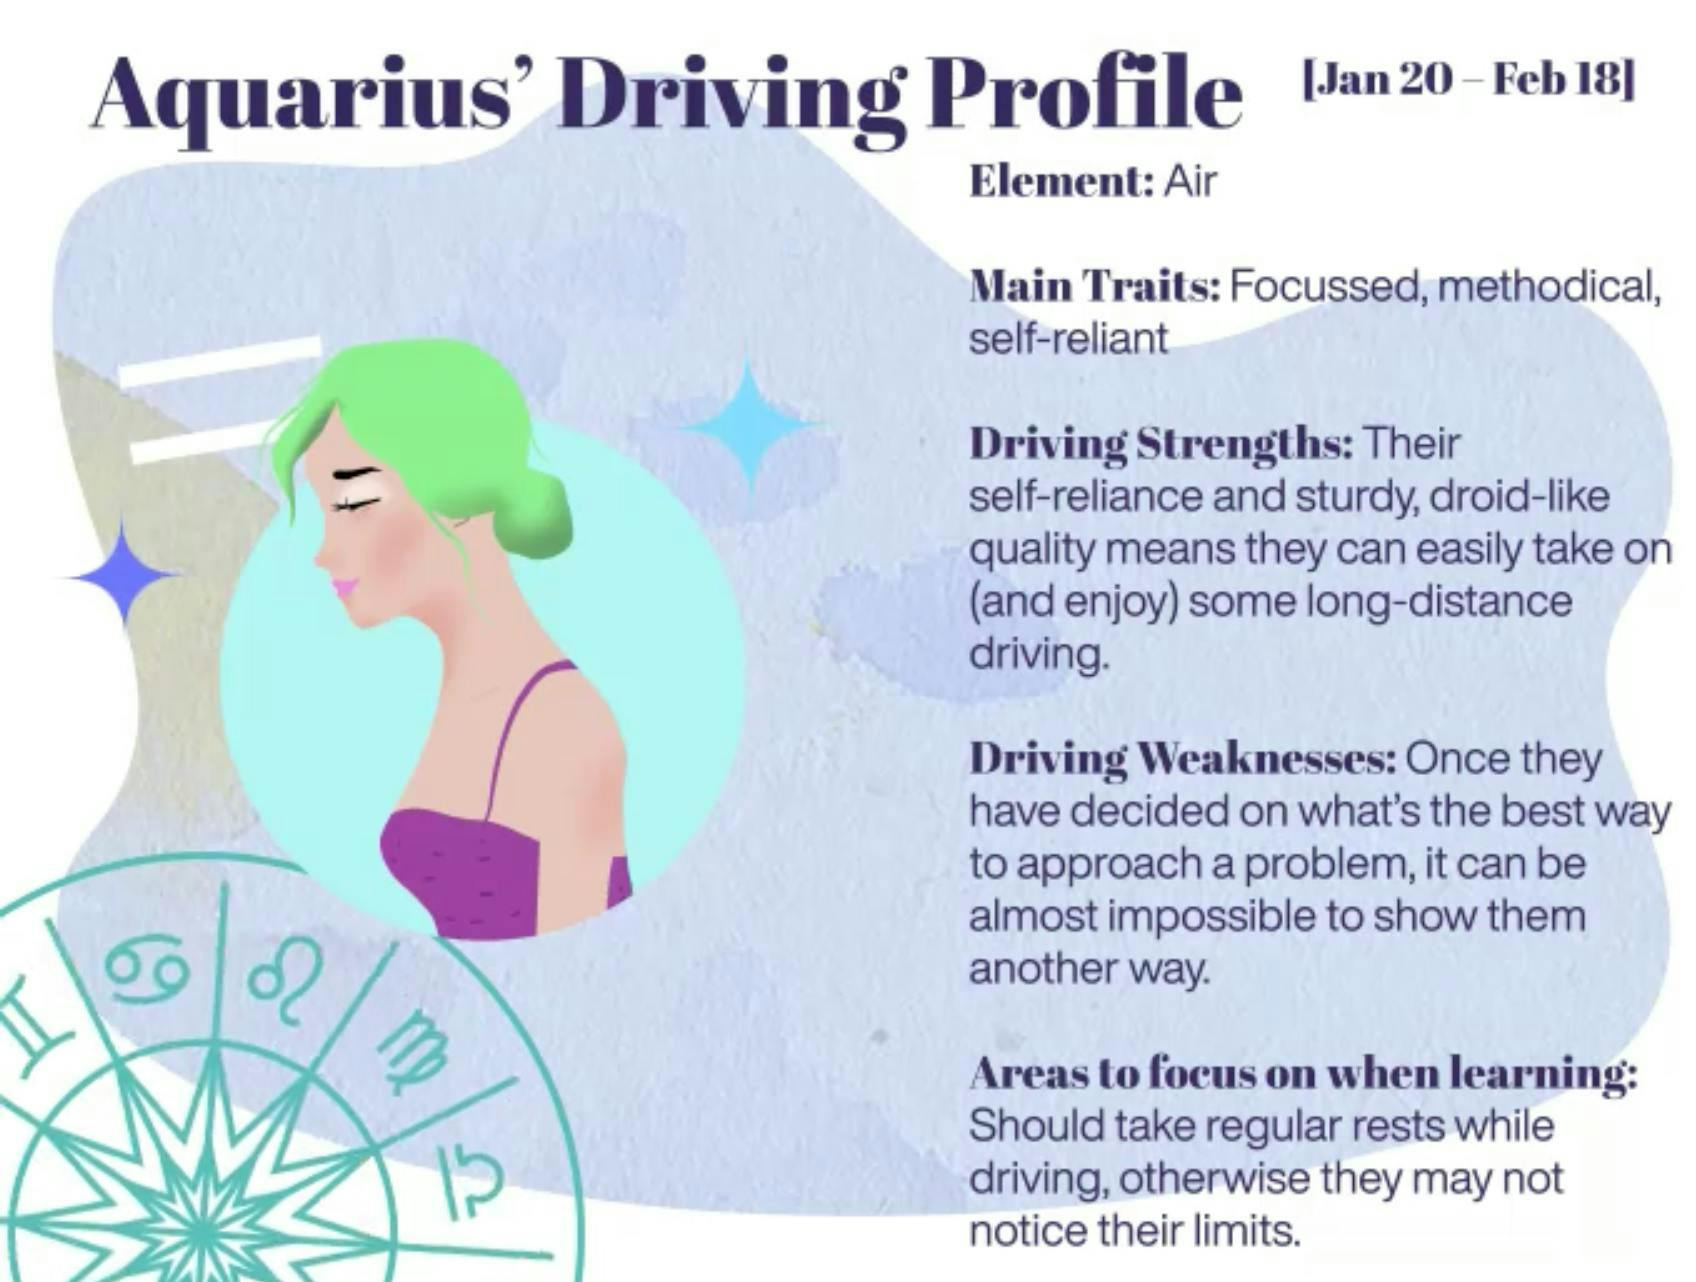 Aquarius driving profile